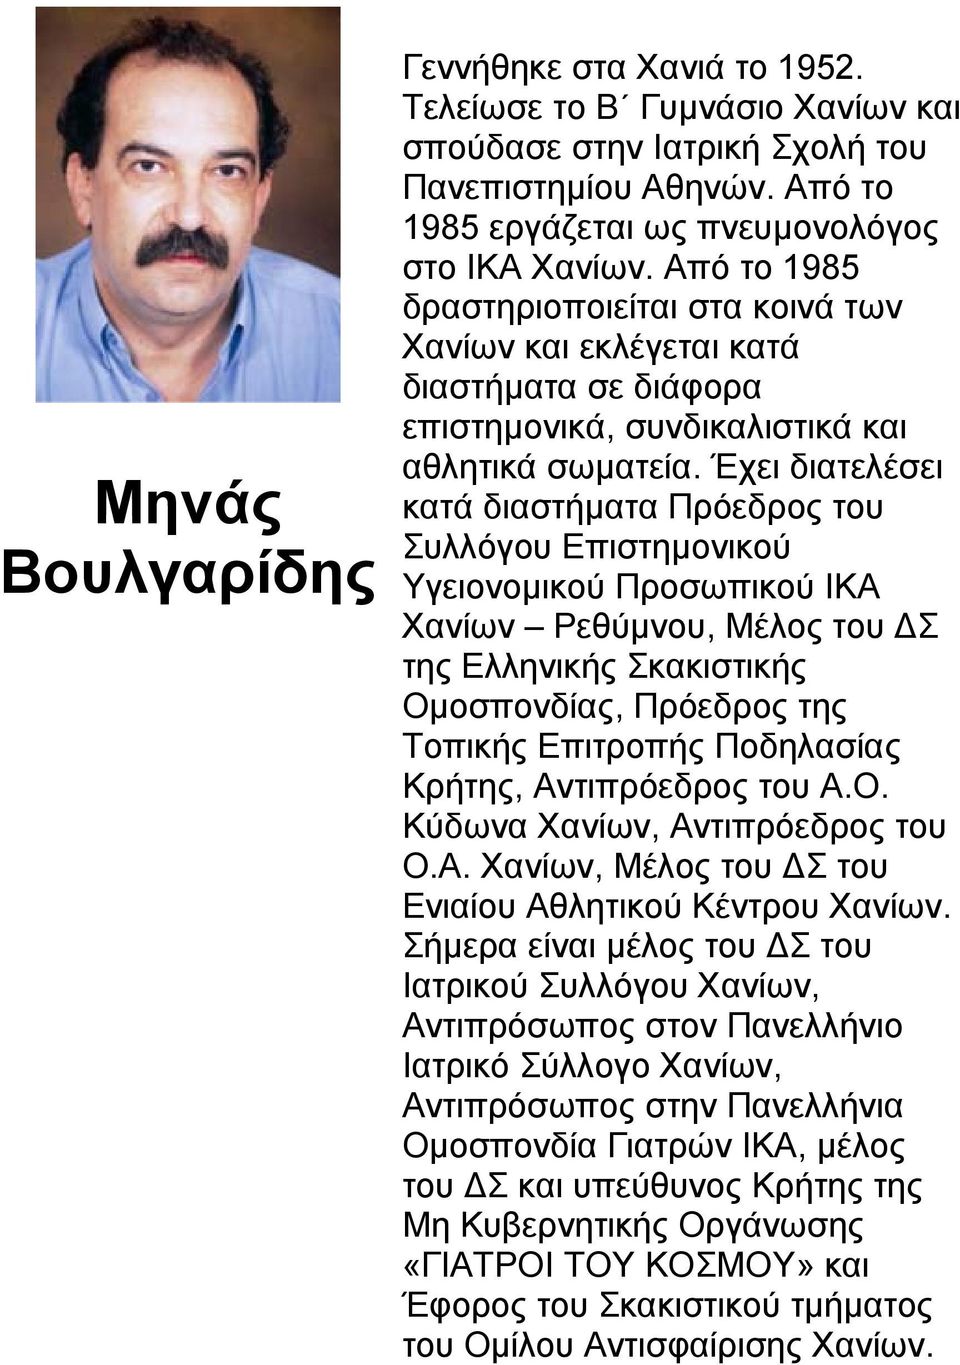 Έχει διατελέσει κατά διαστήµατα Πρόεδρος του Συλλόγου Επιστηµονικού Υγειονοµικού Προσωπικού ΙΚΑ Χανίων Ρεθύµνου, Μέλος του Σ της Ελληνικής Σκακιστικής Οµοσπονδίας, Πρόεδρος της Τοπικής Επιτροπής